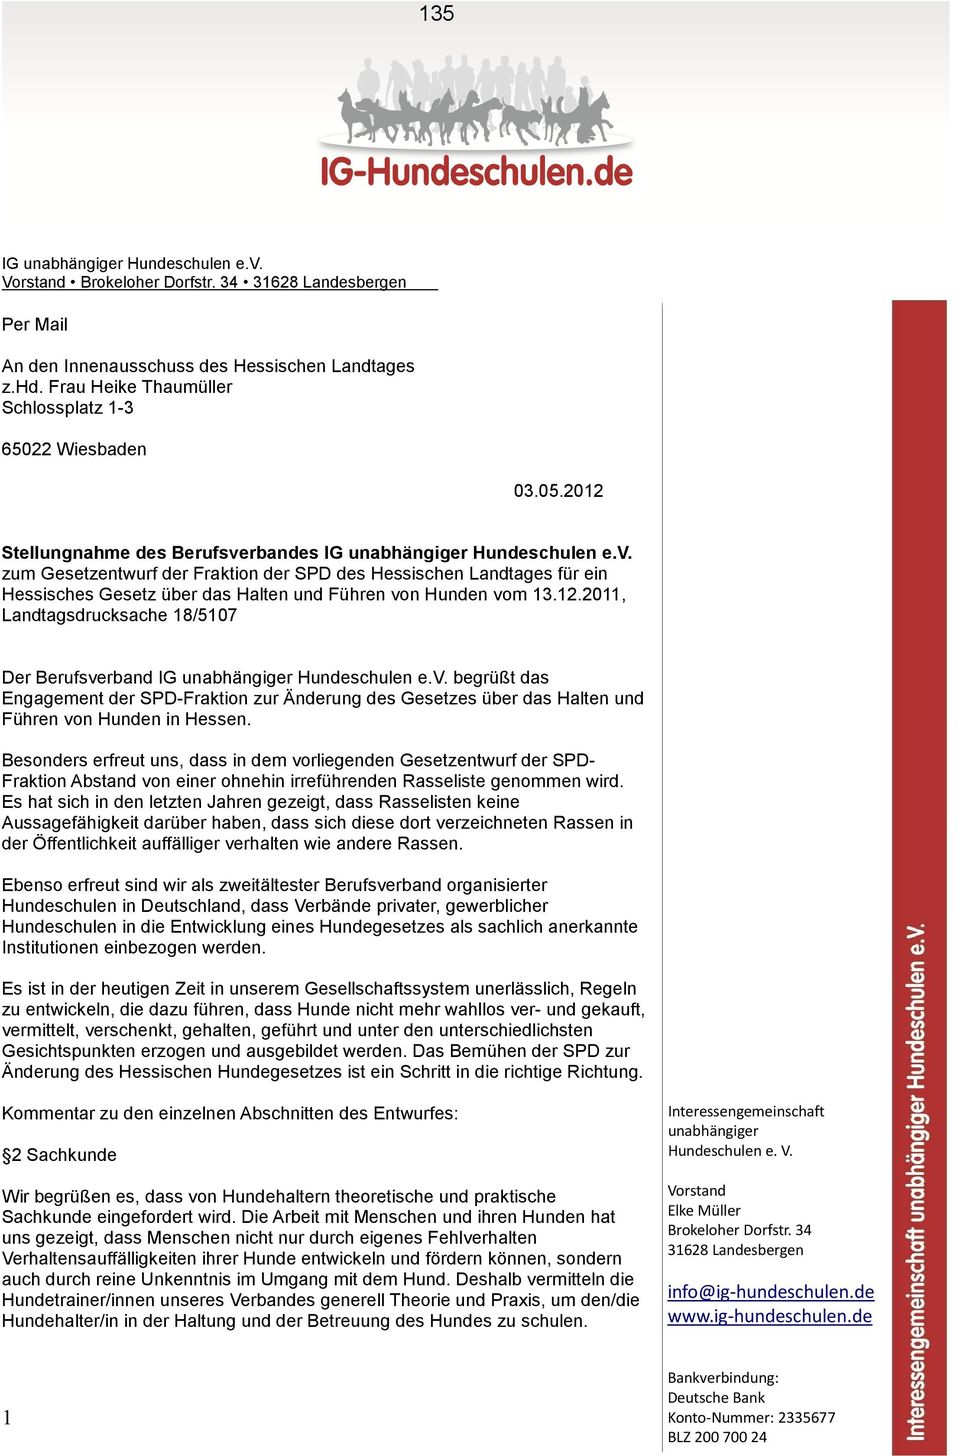 rbandes IG unabhängiger Hundeschulen e.v. zum Gesetzentwurf der Fraktion der SPD des Hessischen Landtages für ein Hessisches Gesetz über das Halten und Führen von Hunden vom 13.12.